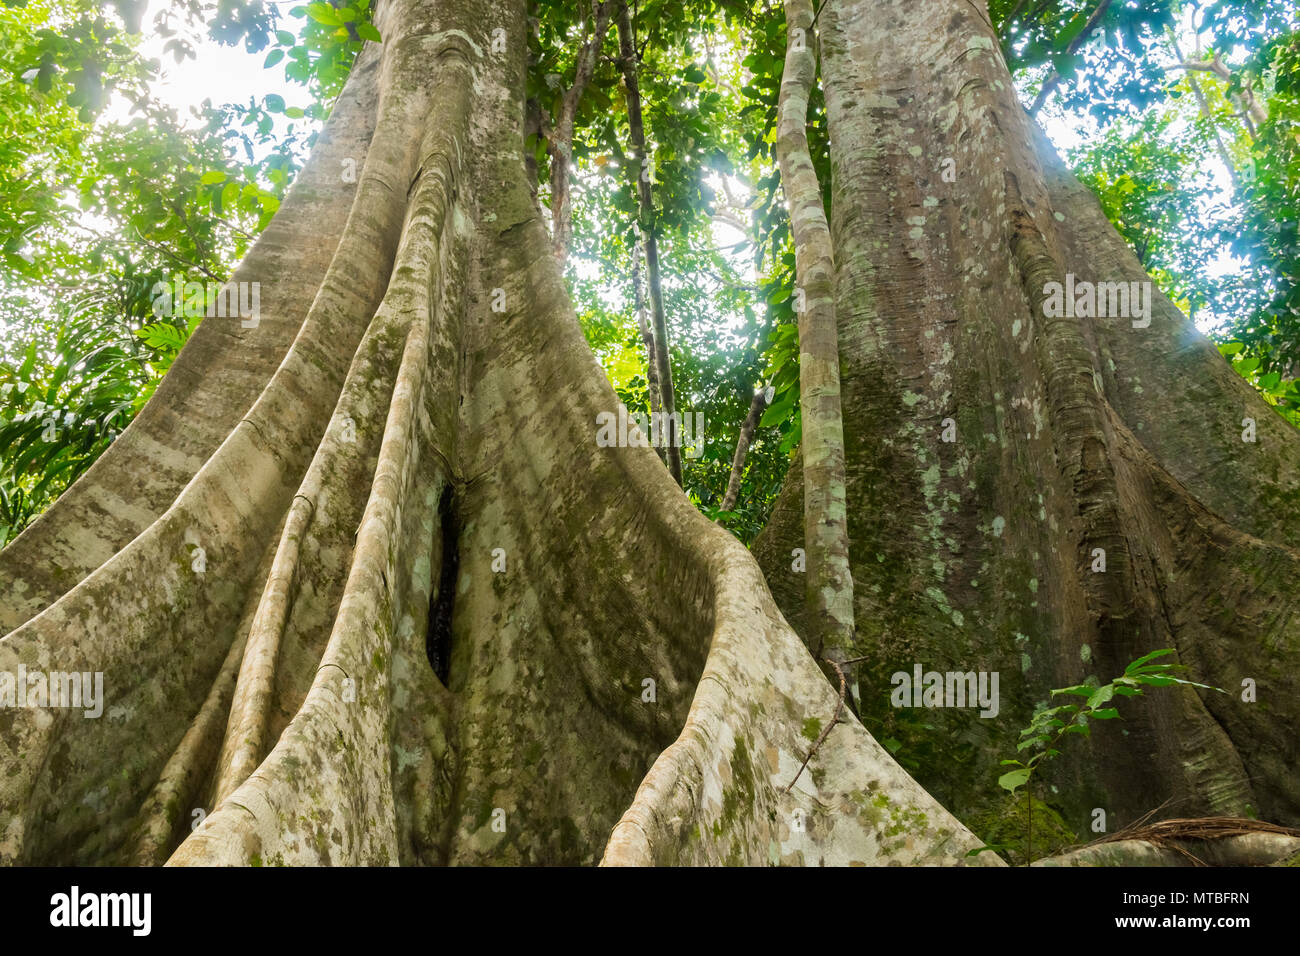 La Thaïlande avec de grands arbres de la forêt tropicale dans l'île de Koh Samui Banque D'Images